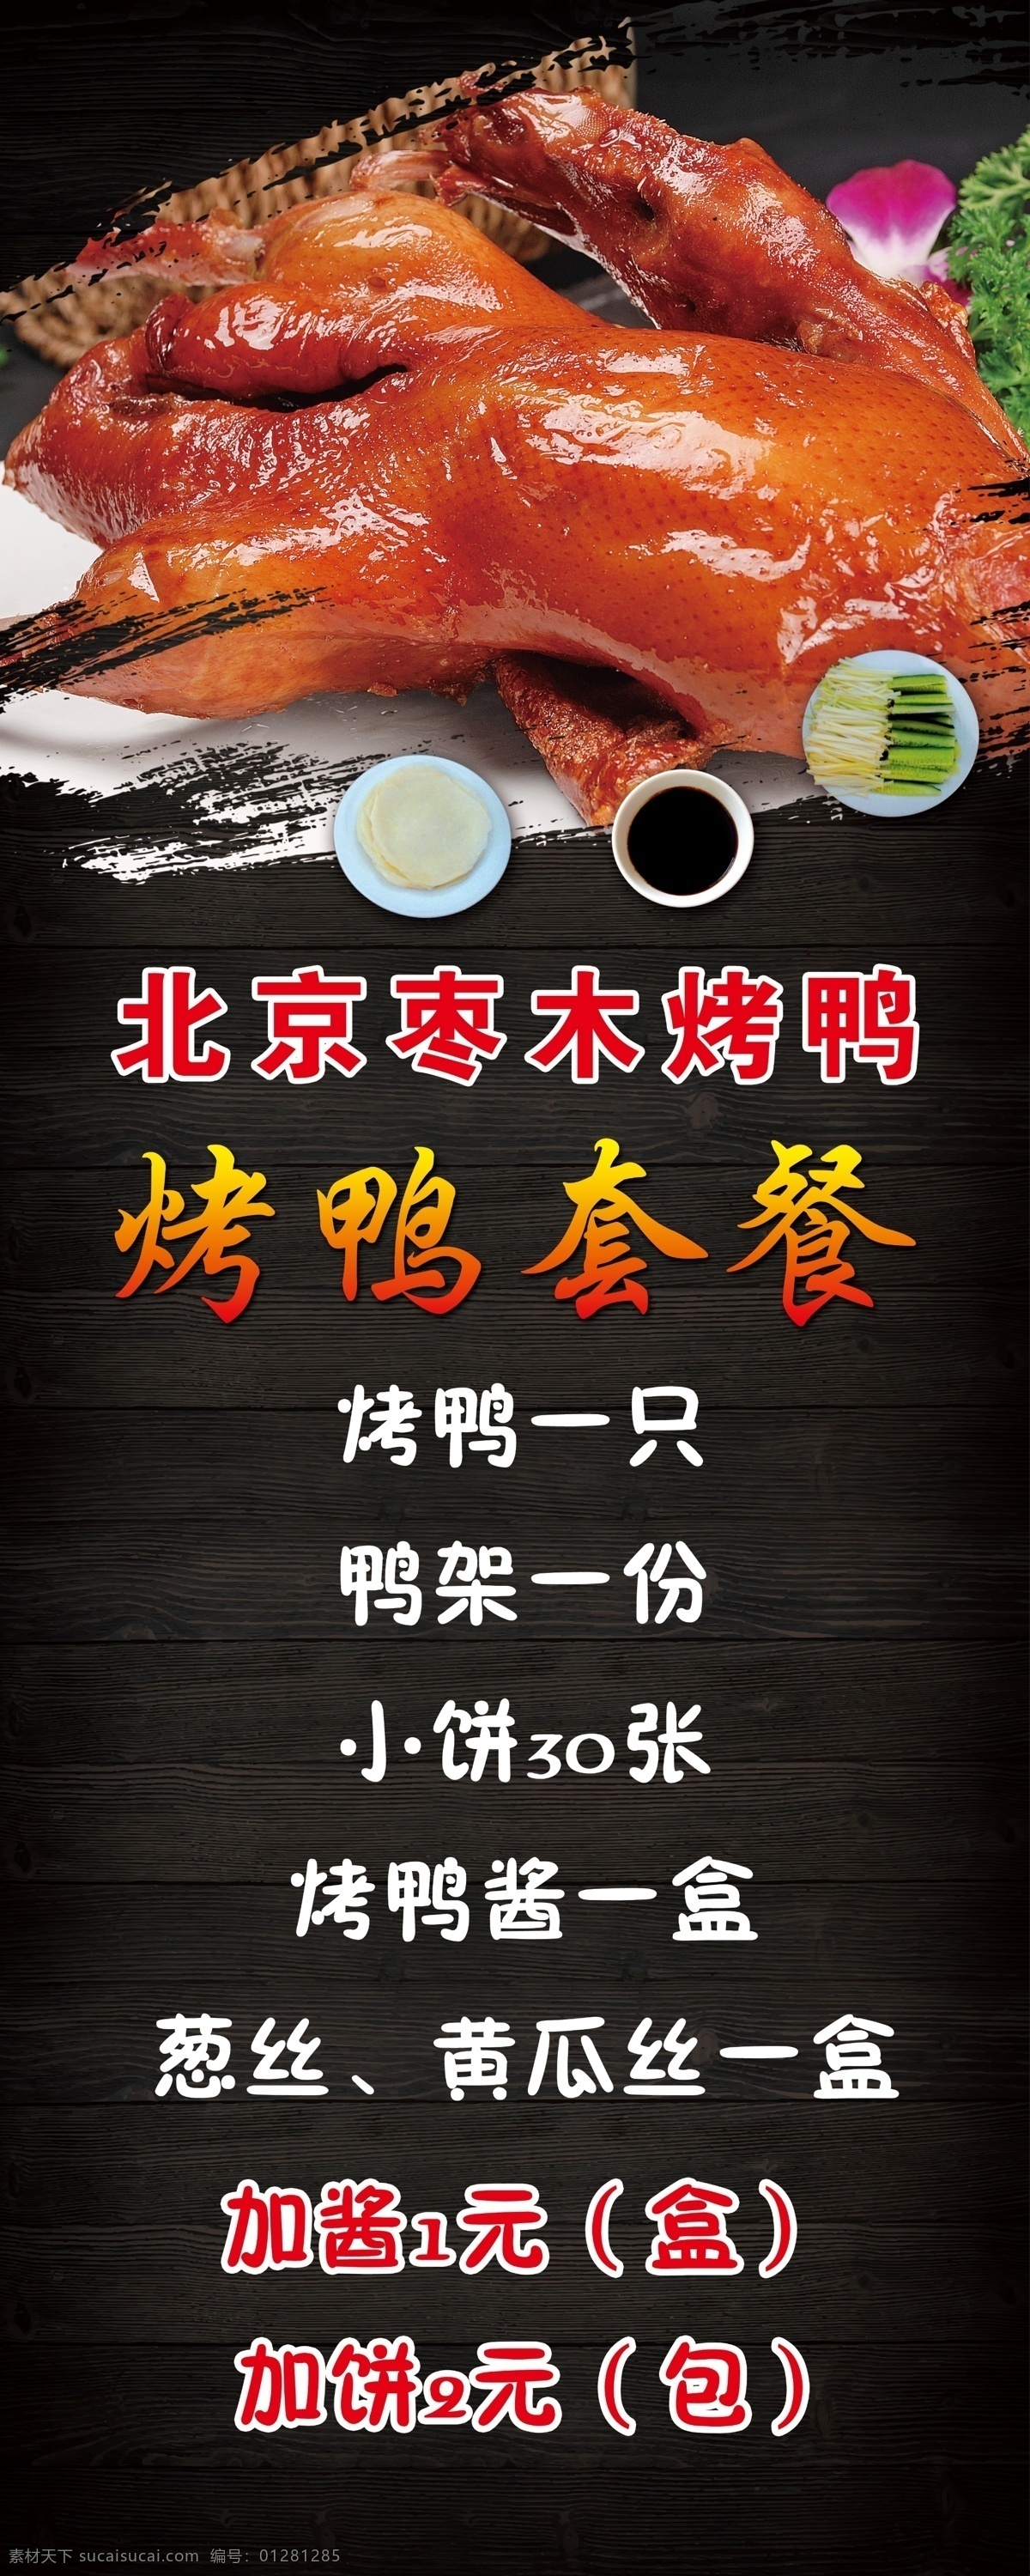 烤鸭套餐展板 烤鸭 套餐 展板 北京 枣木 室内广告设计